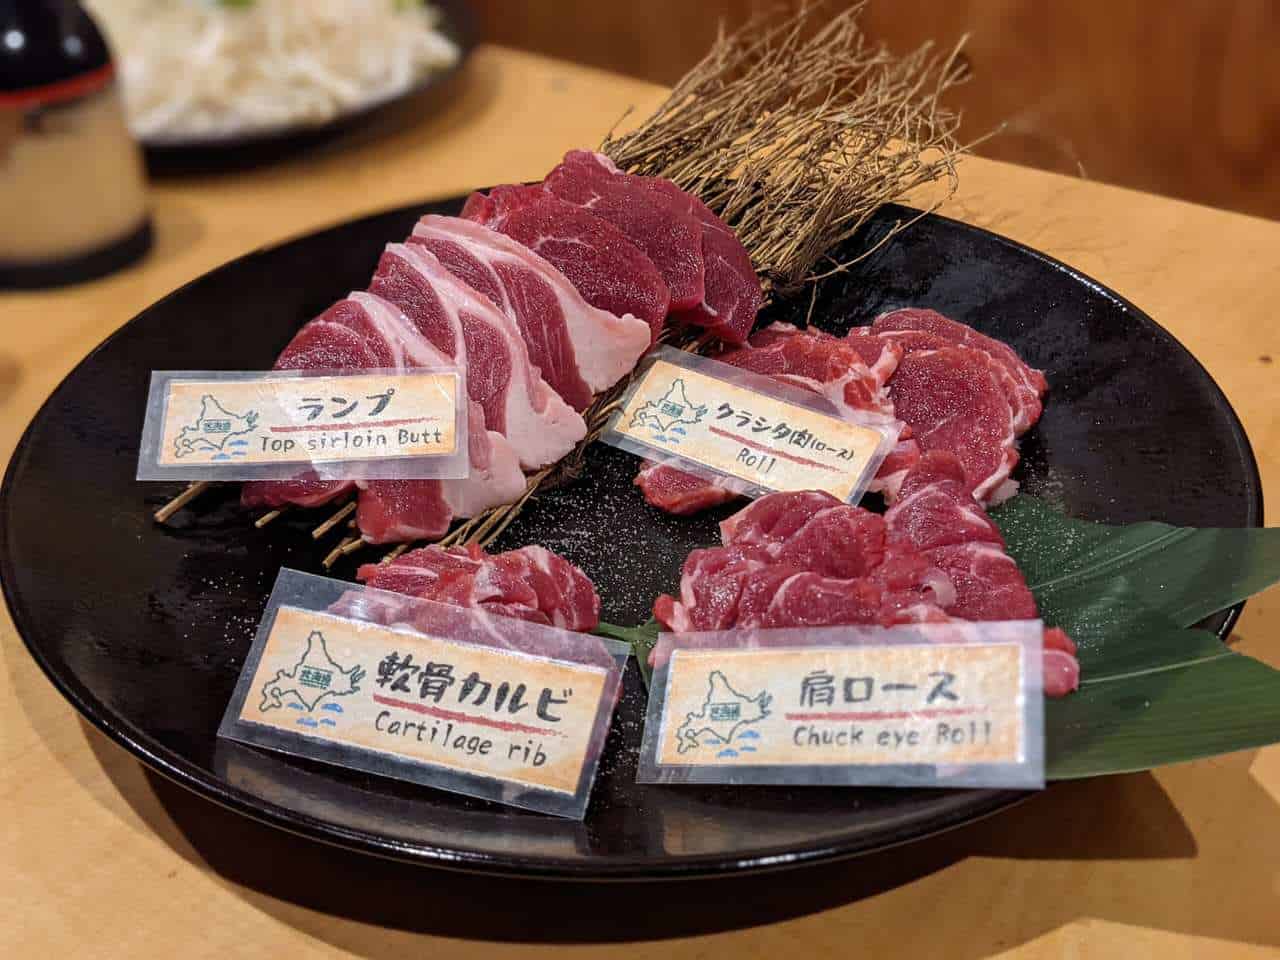 Japanisches Rindfleisch aus Hokkaido, Japan.